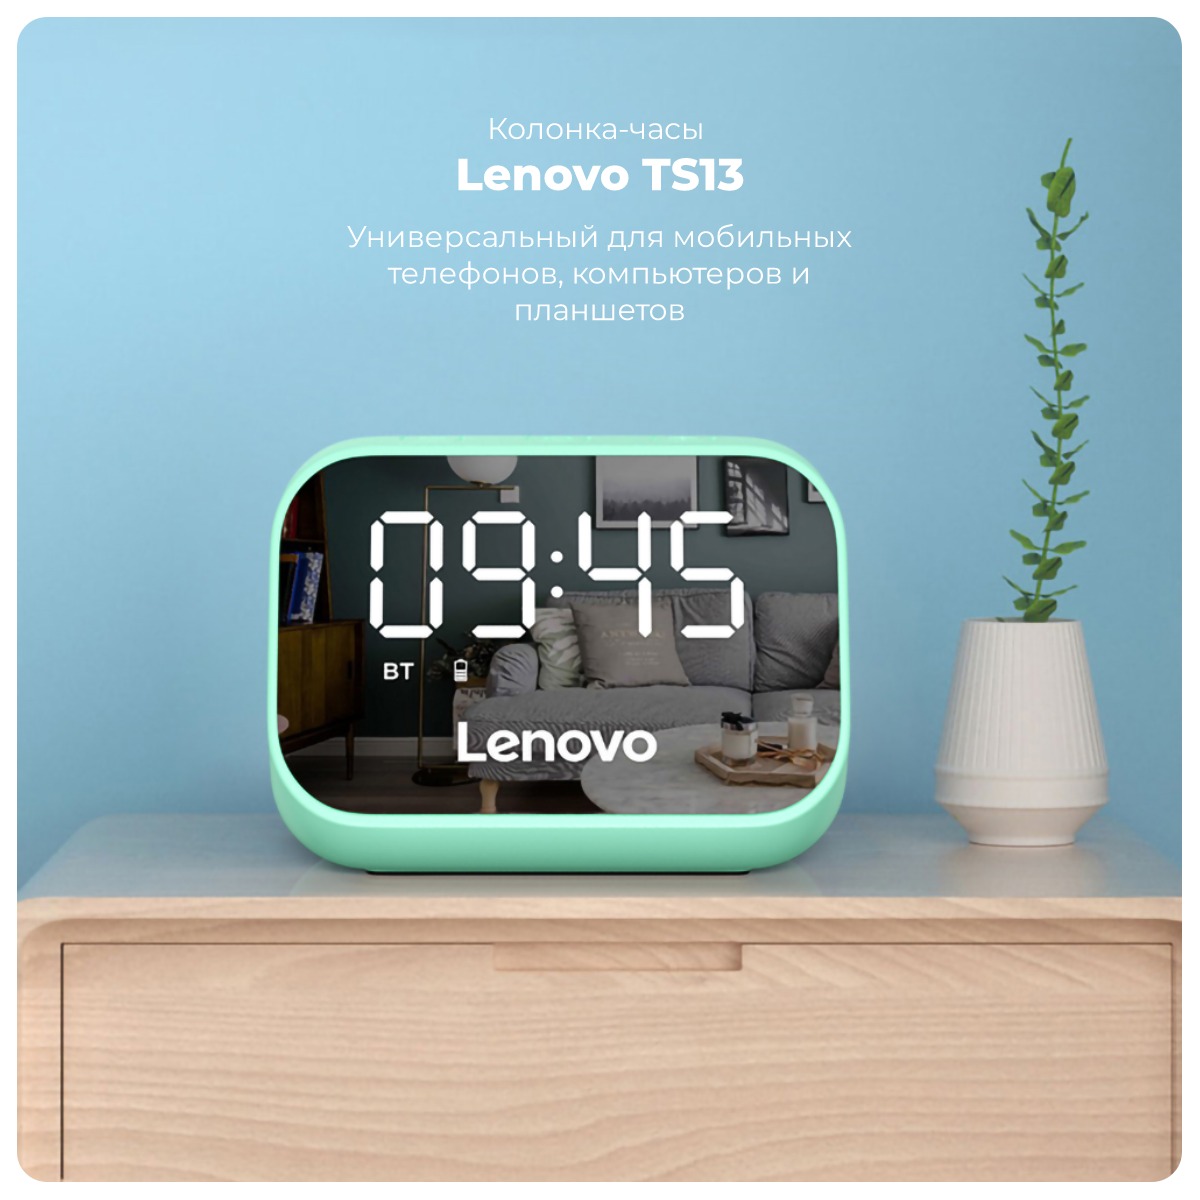 Lenovo-TS13-01